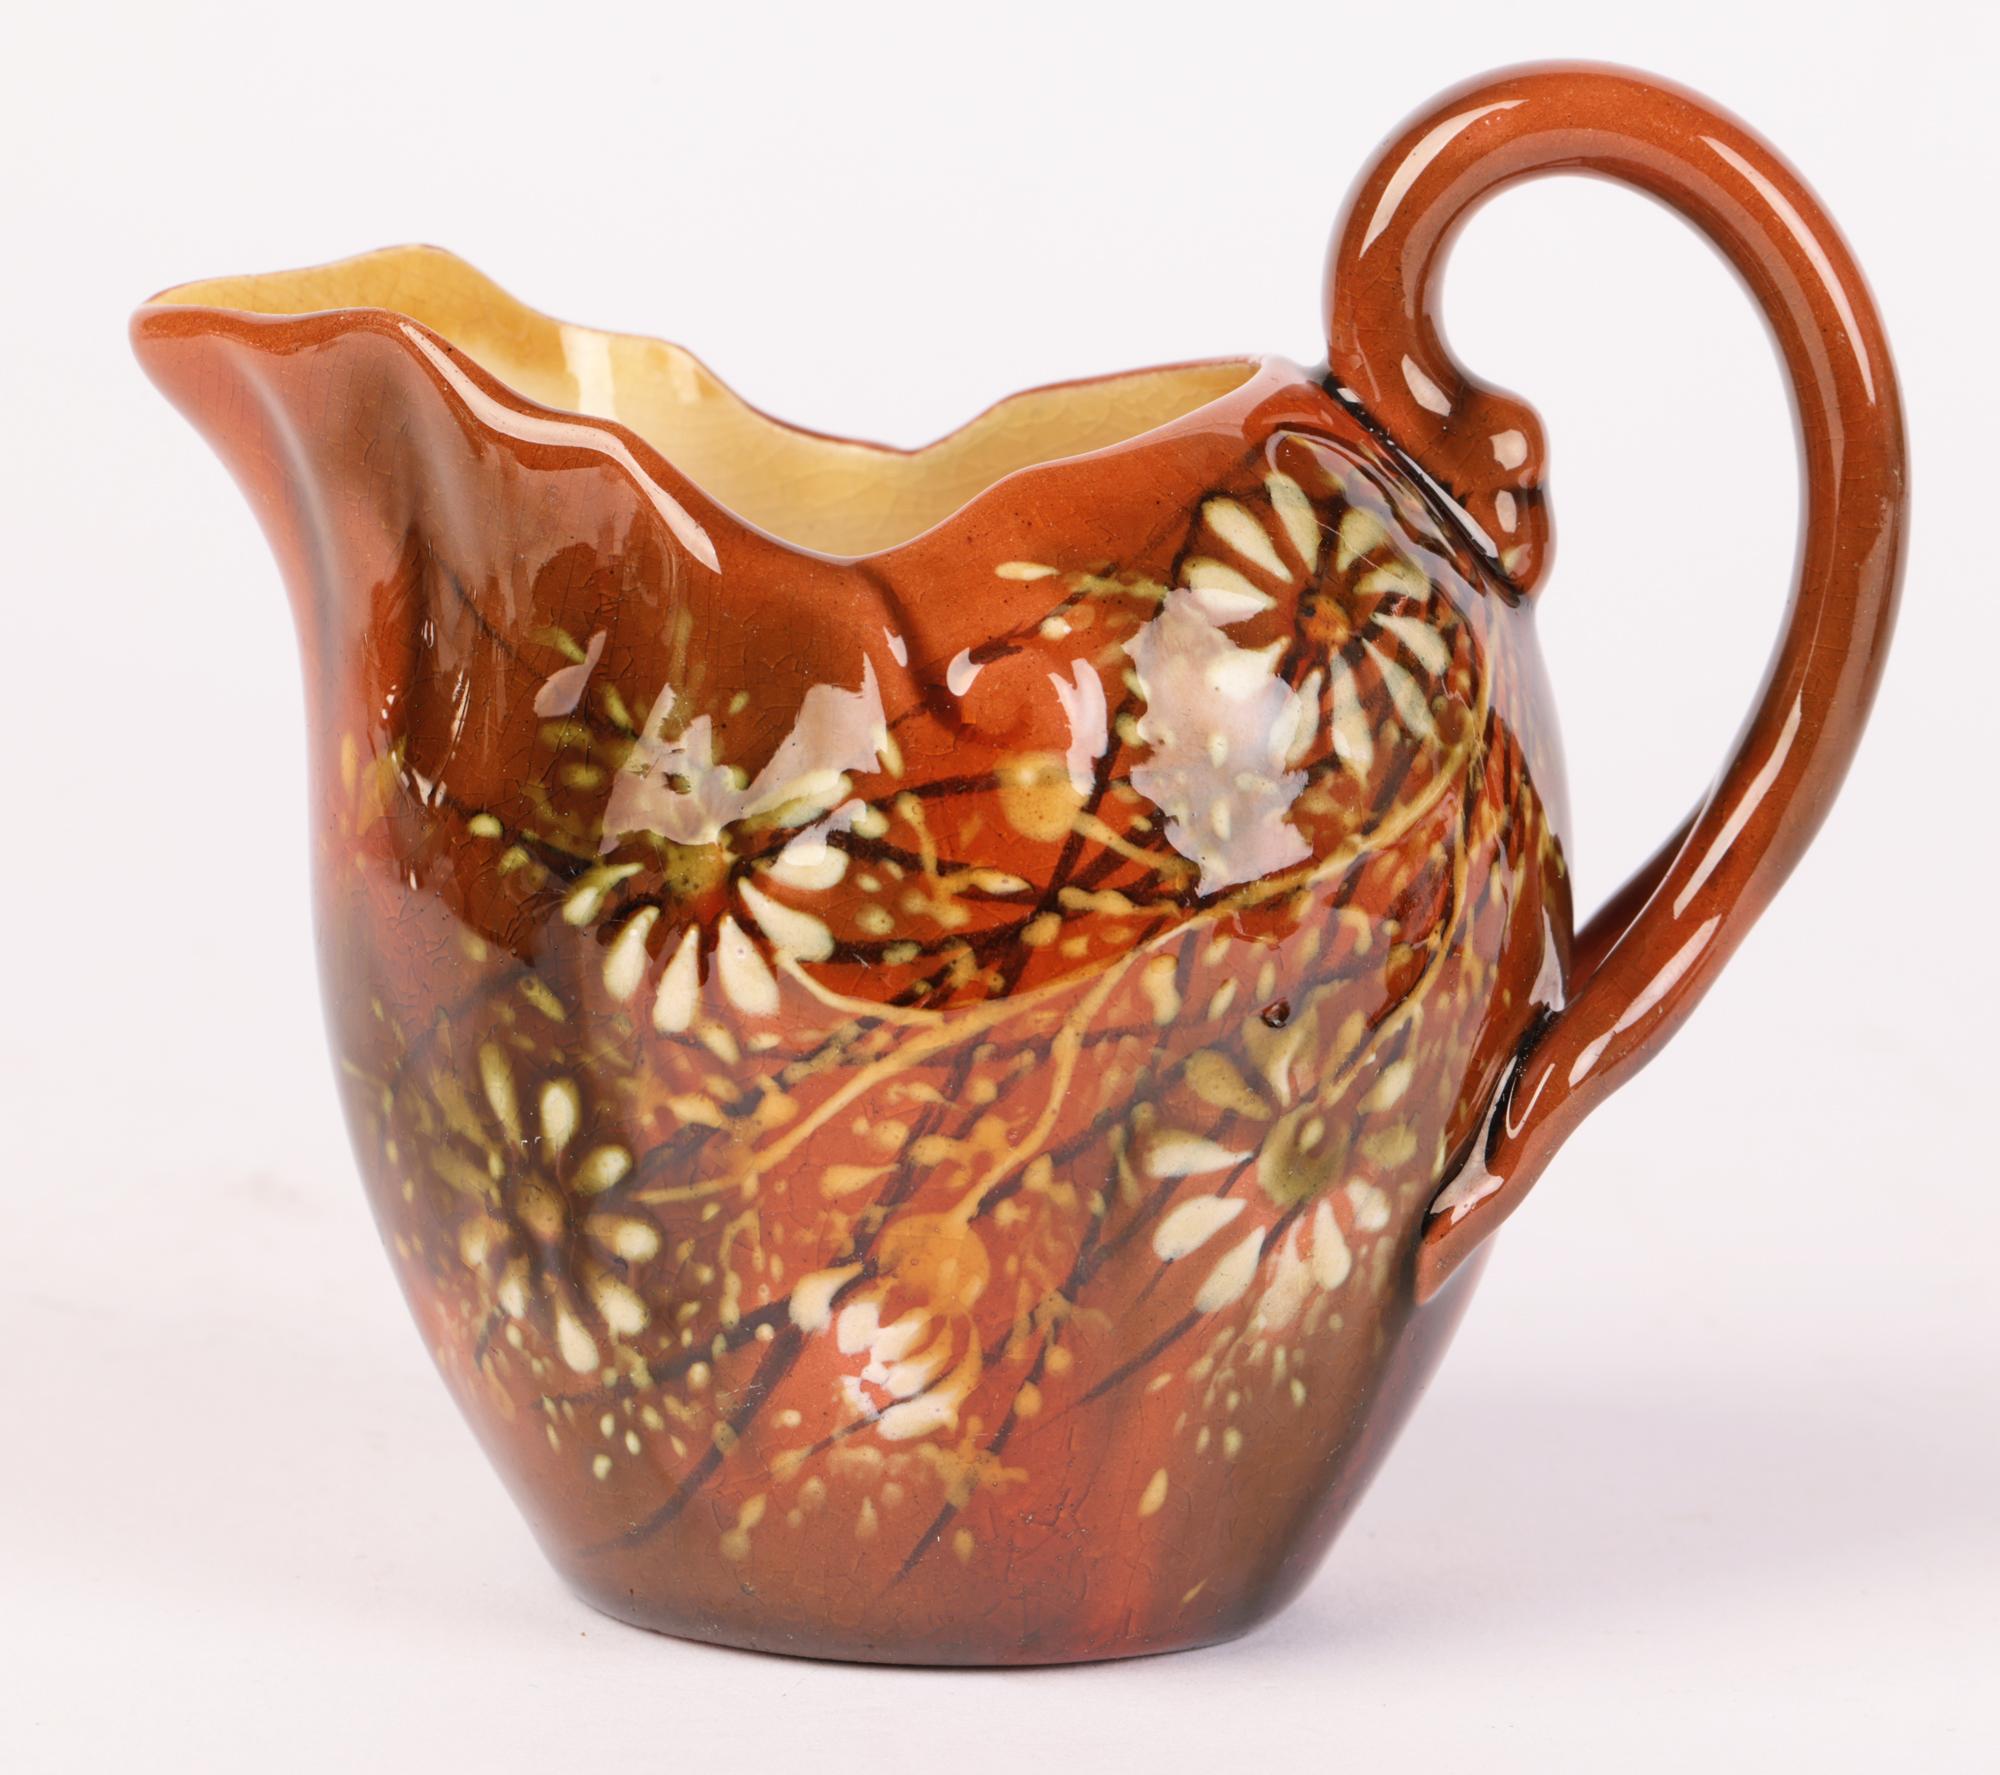 Eine sehr schöne und ungewöhnliche Linthorpe-Keramik mit Untertasse, verziert mit floralen Motiven des berühmten schottischen Designers Christopher Dresser (britisch, 1834 - 1904), aus der Zeit um 1880. Der fein getöpferte Krug hat eine runde,